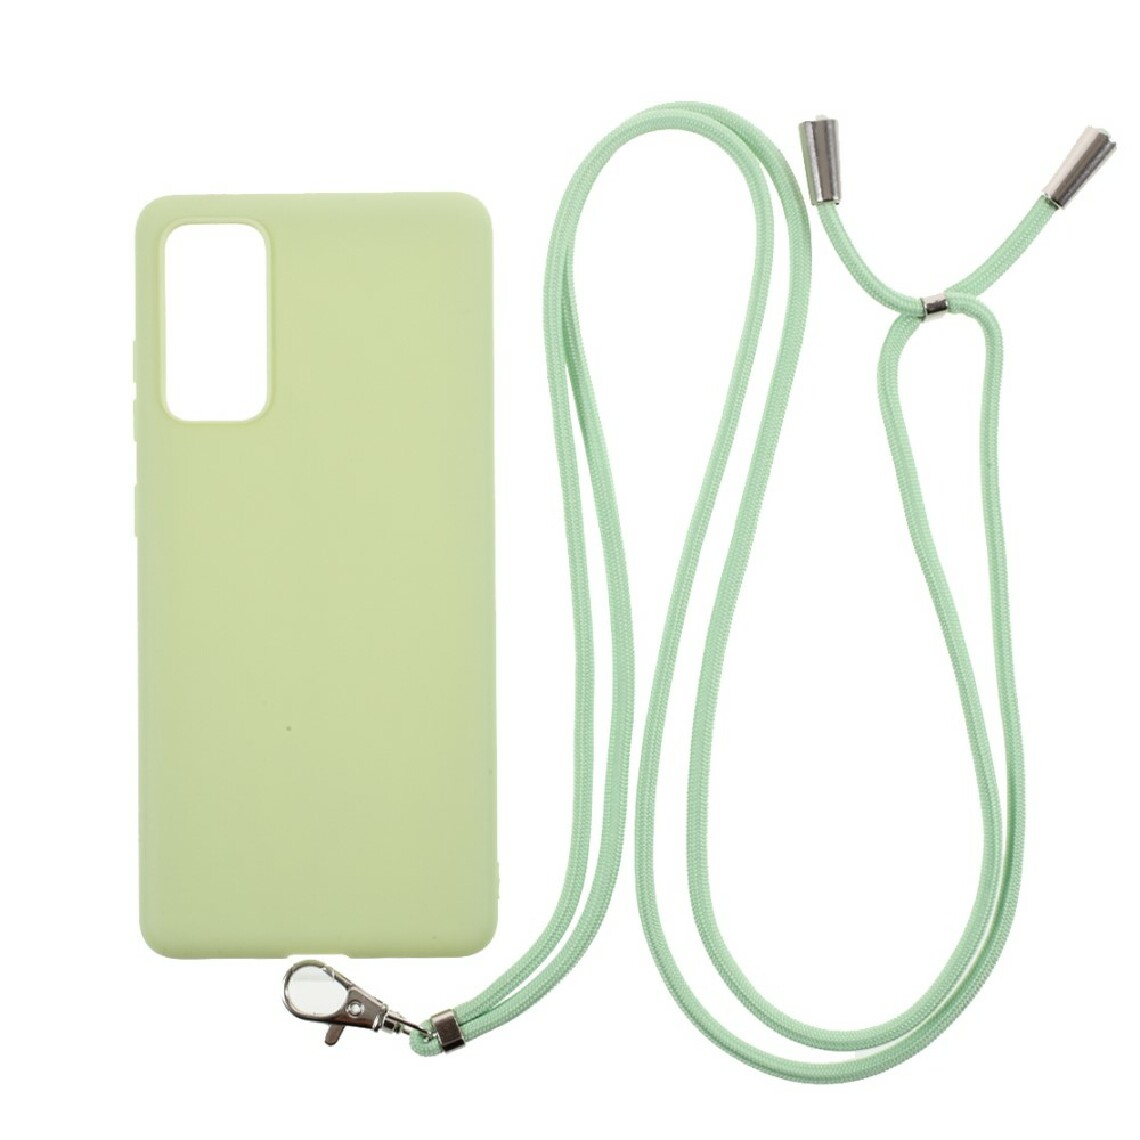 Other - Coque en TPU bonbon de couleur unie avec cordon vert pour votre Samsung Galaxy S20 FE/S20 FE 5G - Coque, étui smartphone